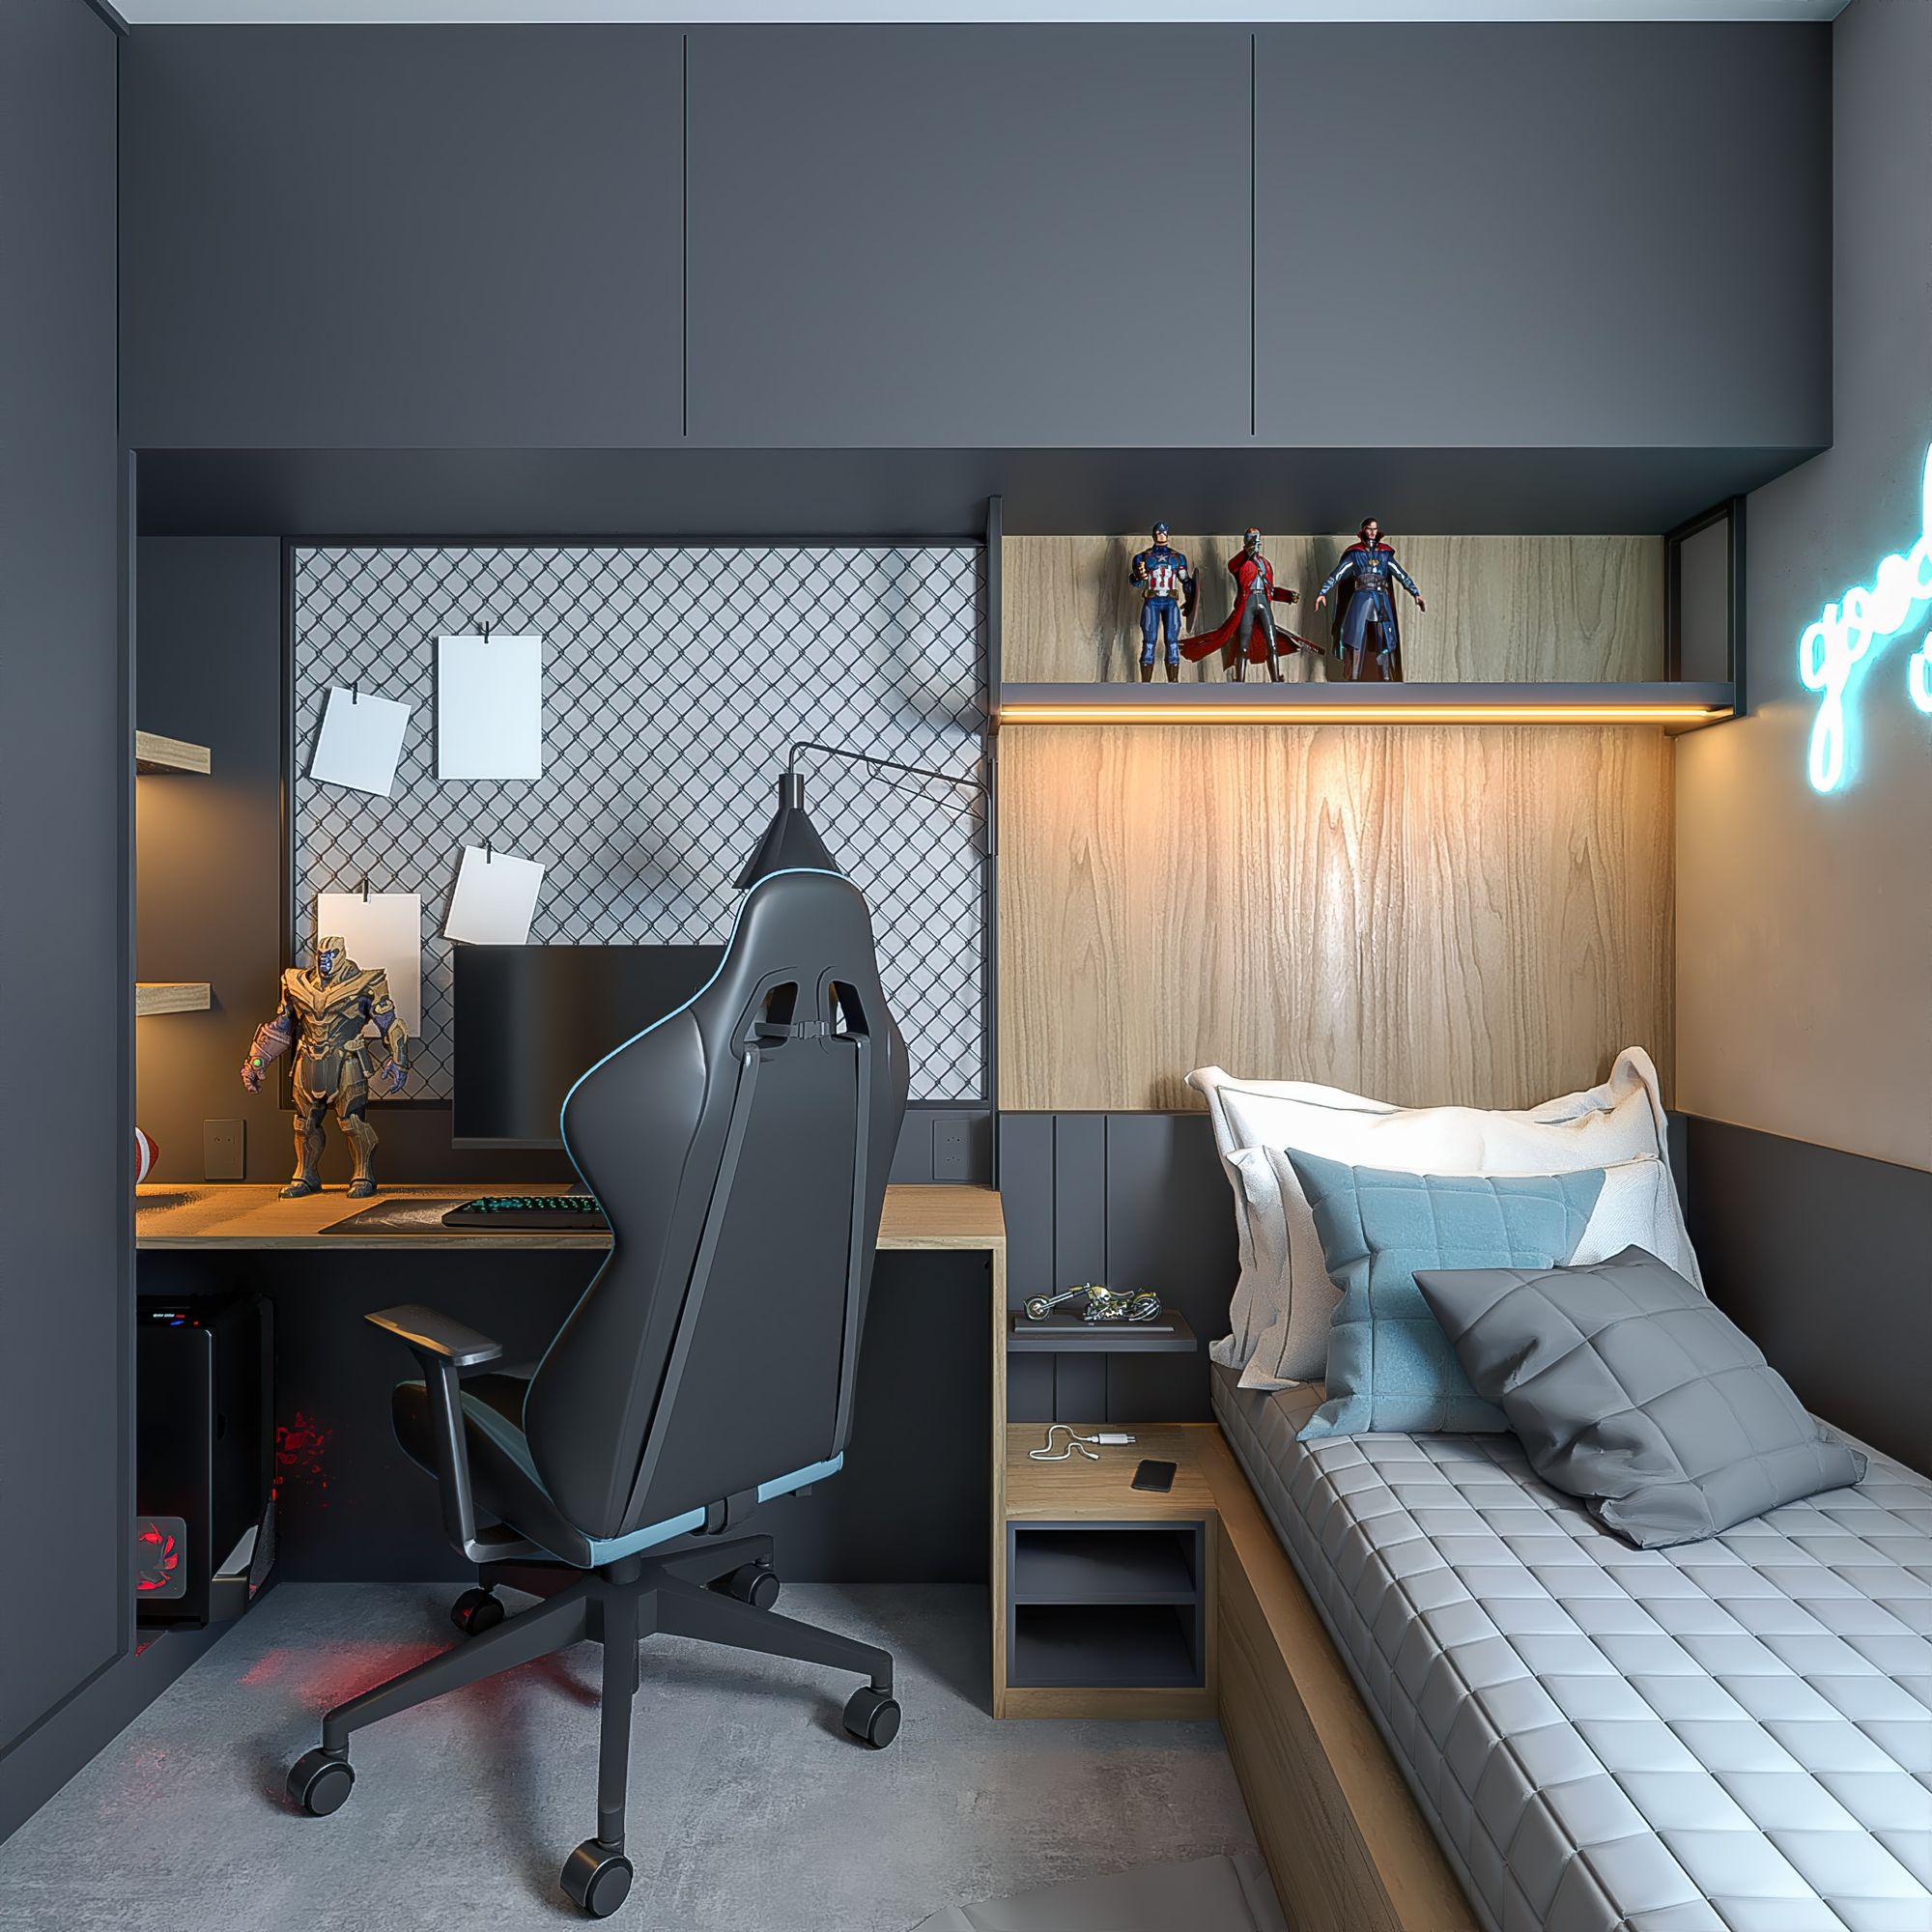 dormitorio juvenil pequeño para gamer, con silla de juego, figuras de acción y cama pequeña